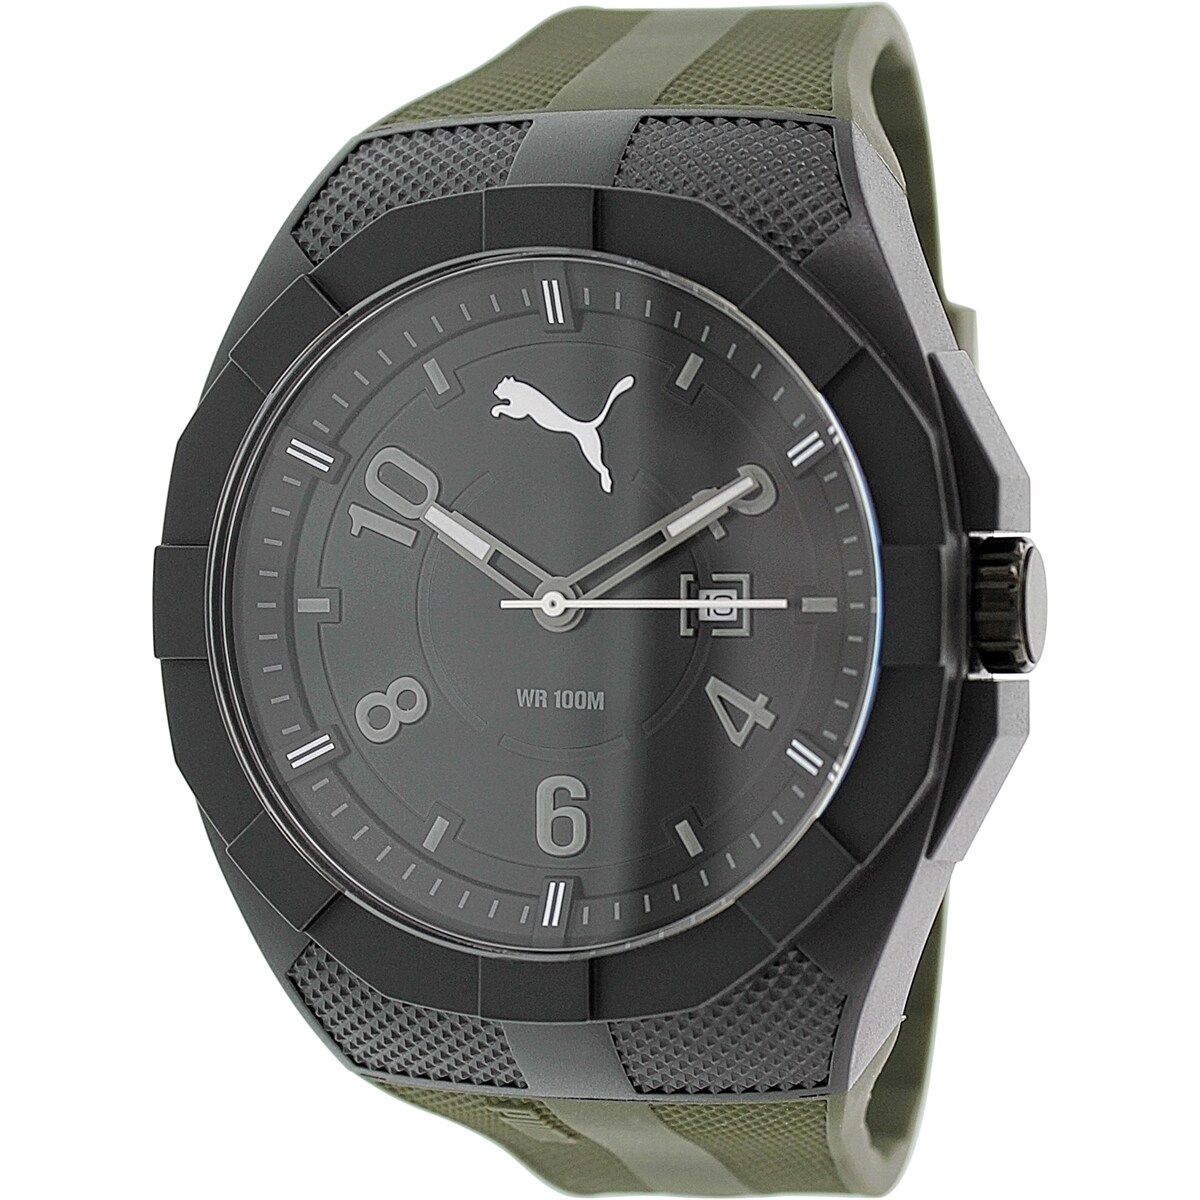 puma watch wr100m